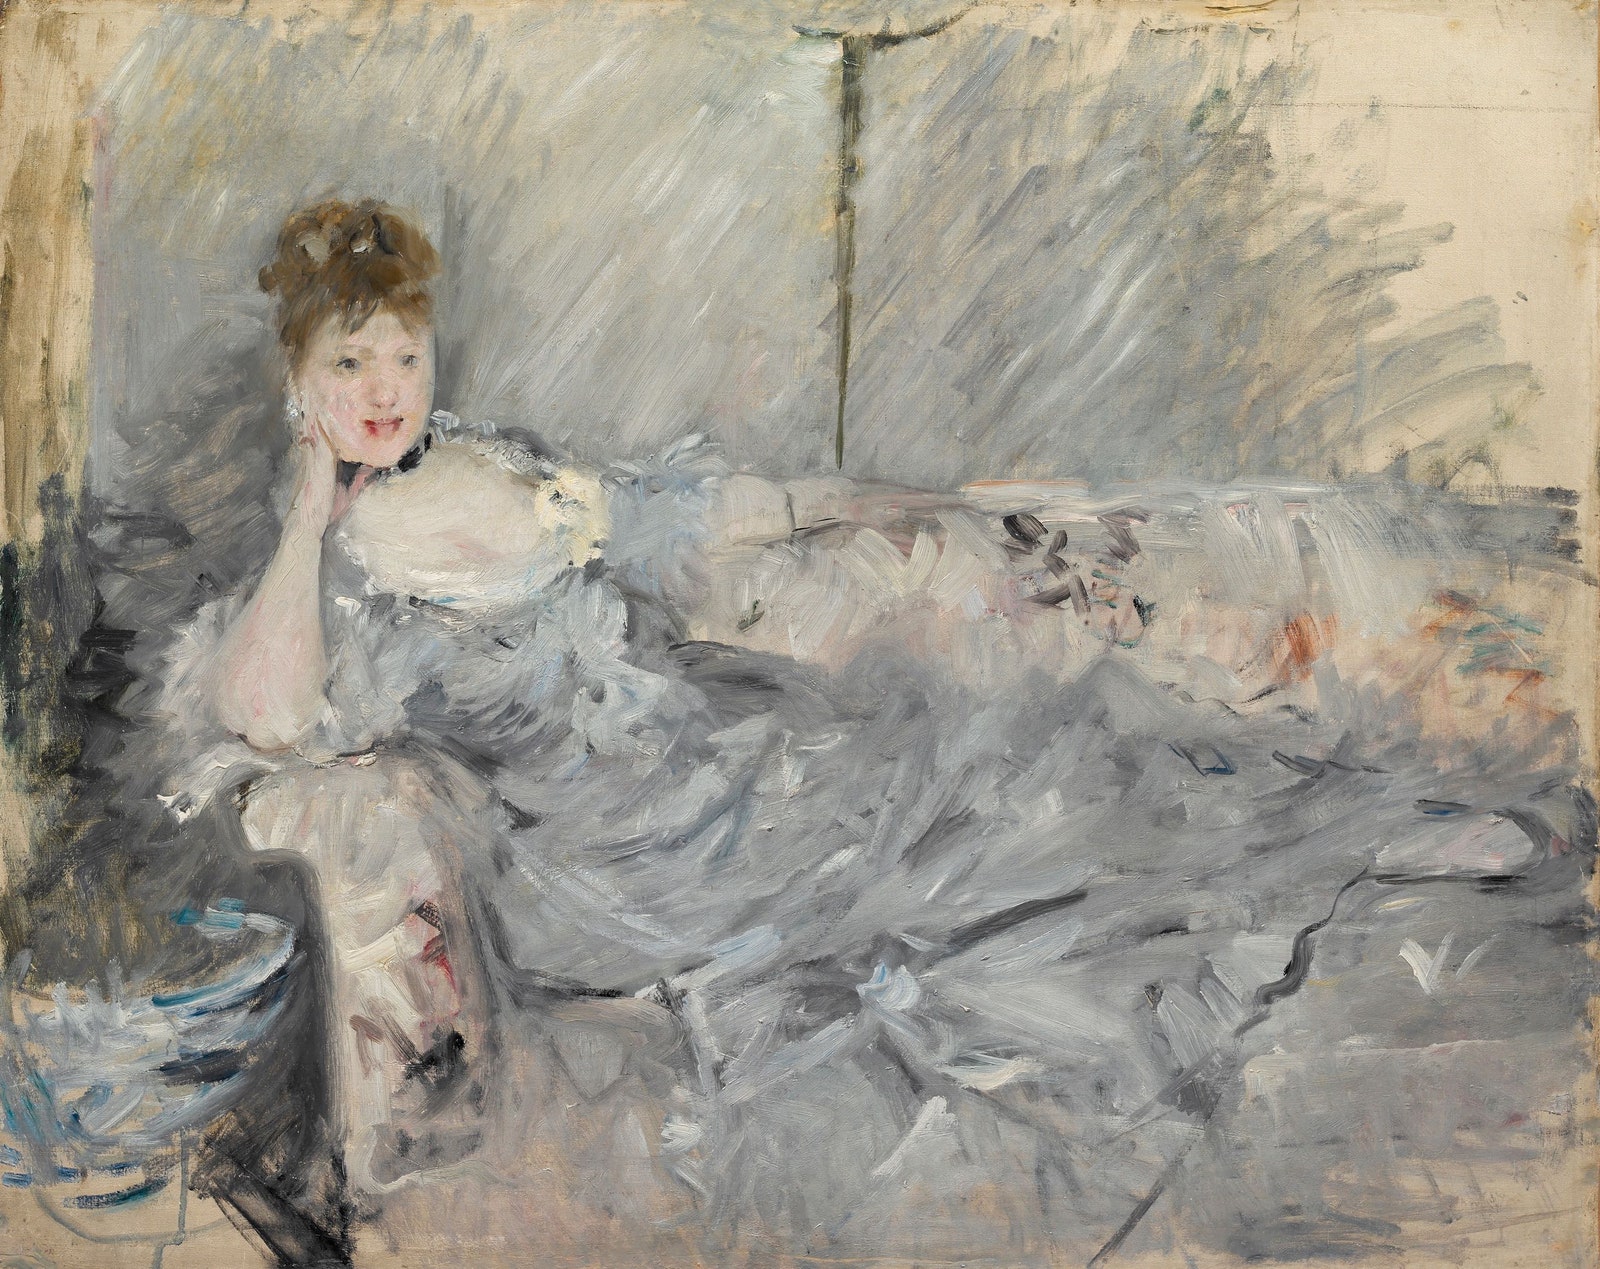 贝尔特·莫里索，《斜倚着的灰衣女子》（Young Woman in Grey Reclining），1879